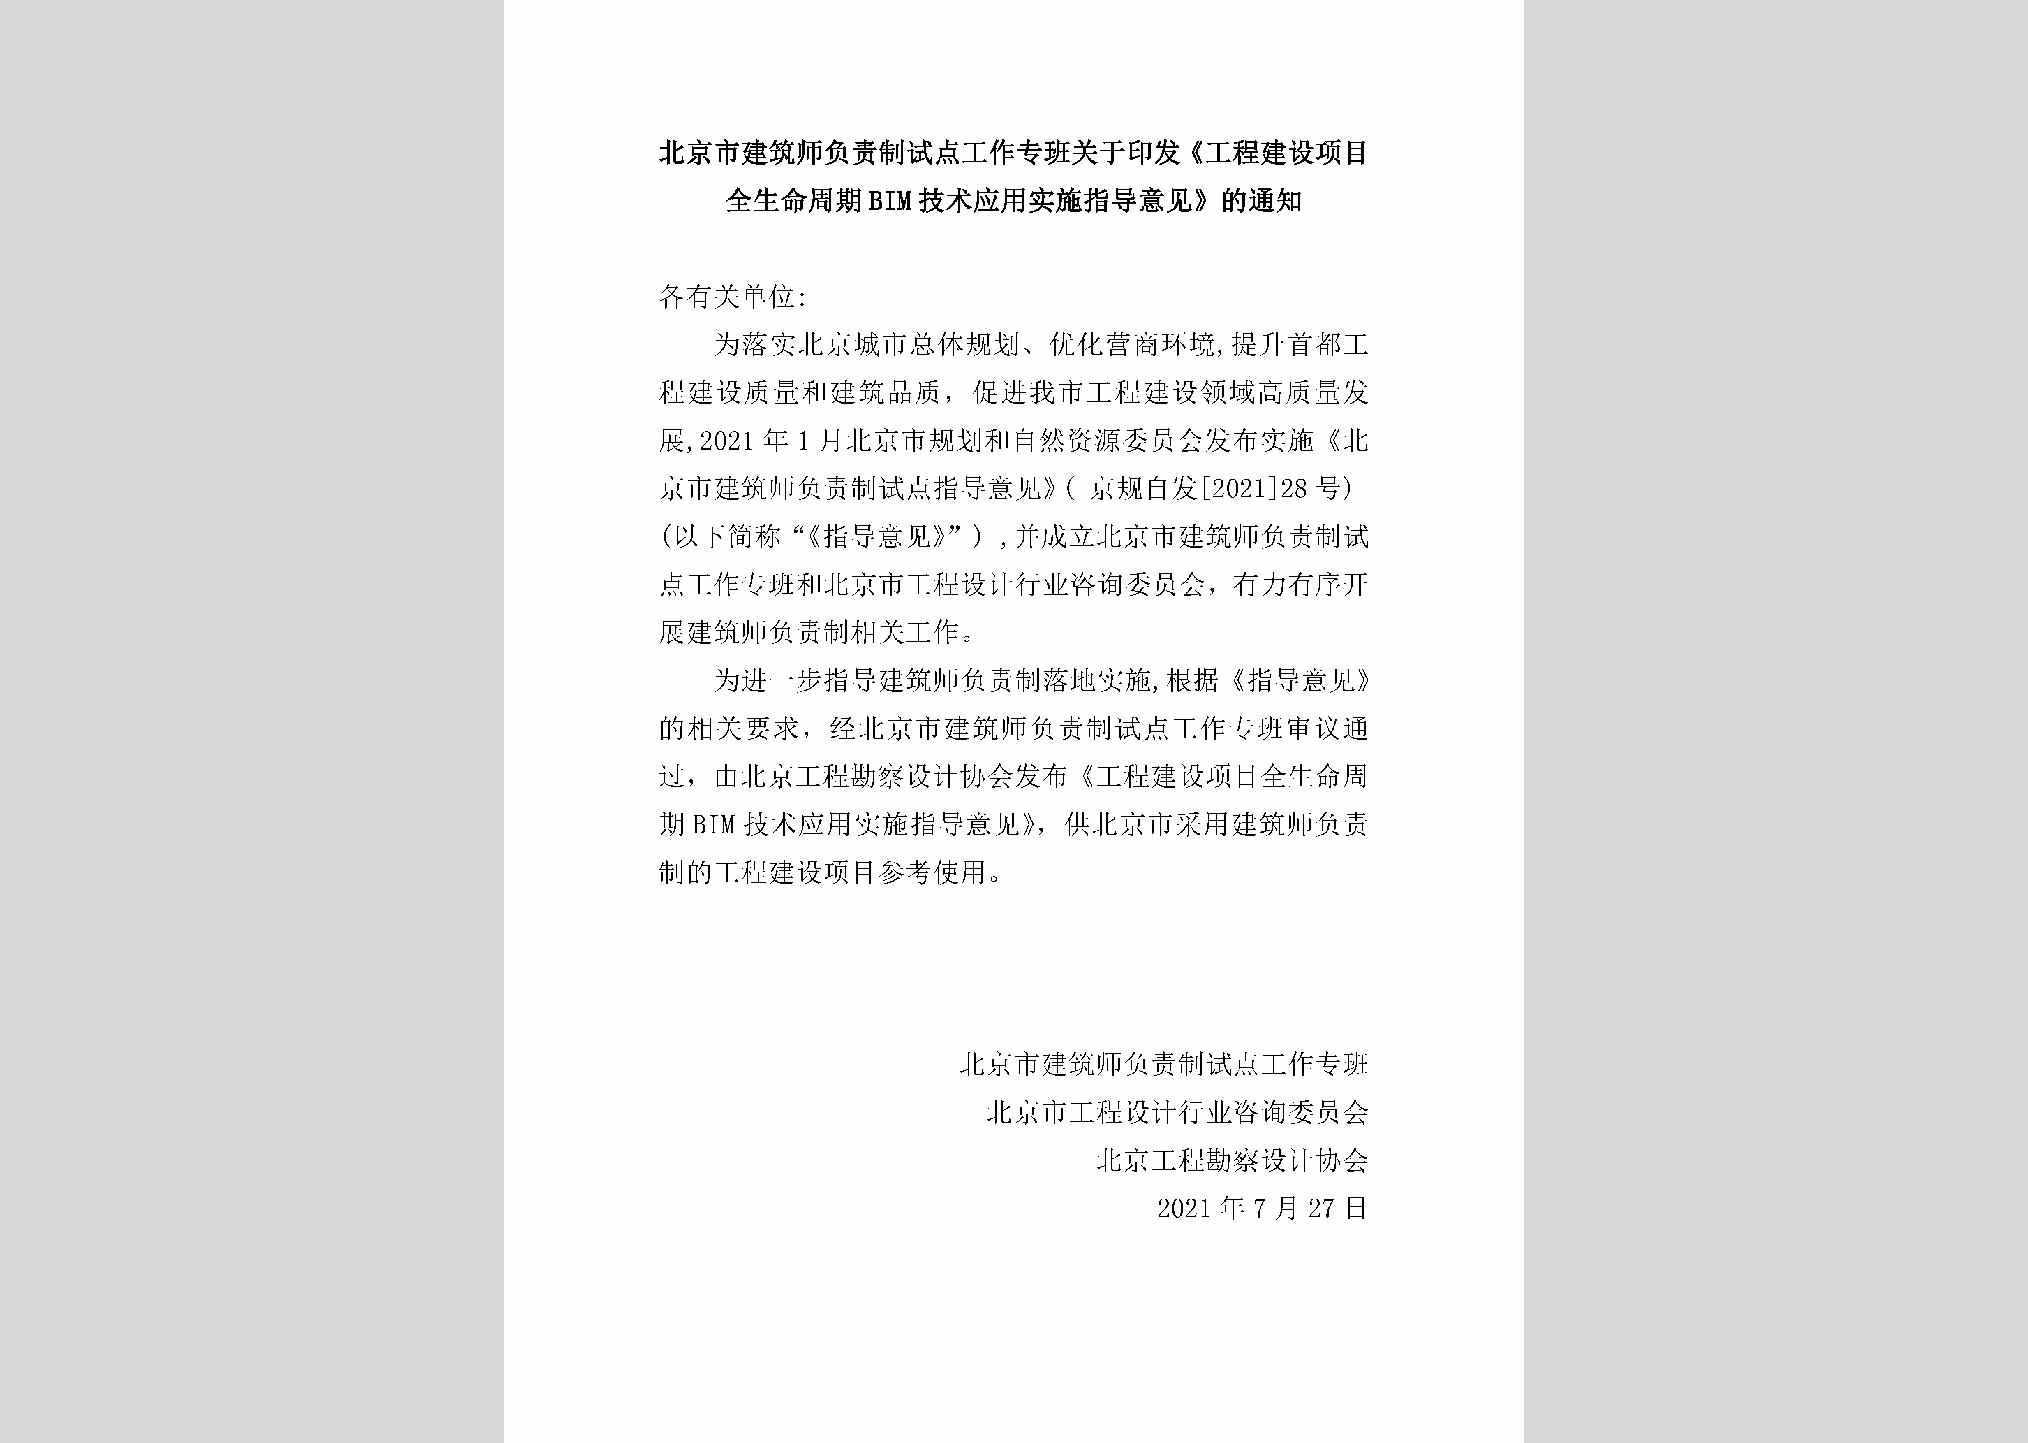 GCJSXMQS：北京市建筑师负责制试点工作专班关于印发《工程建设项目全生命周期BIM技术应用实施指导意见》的通知